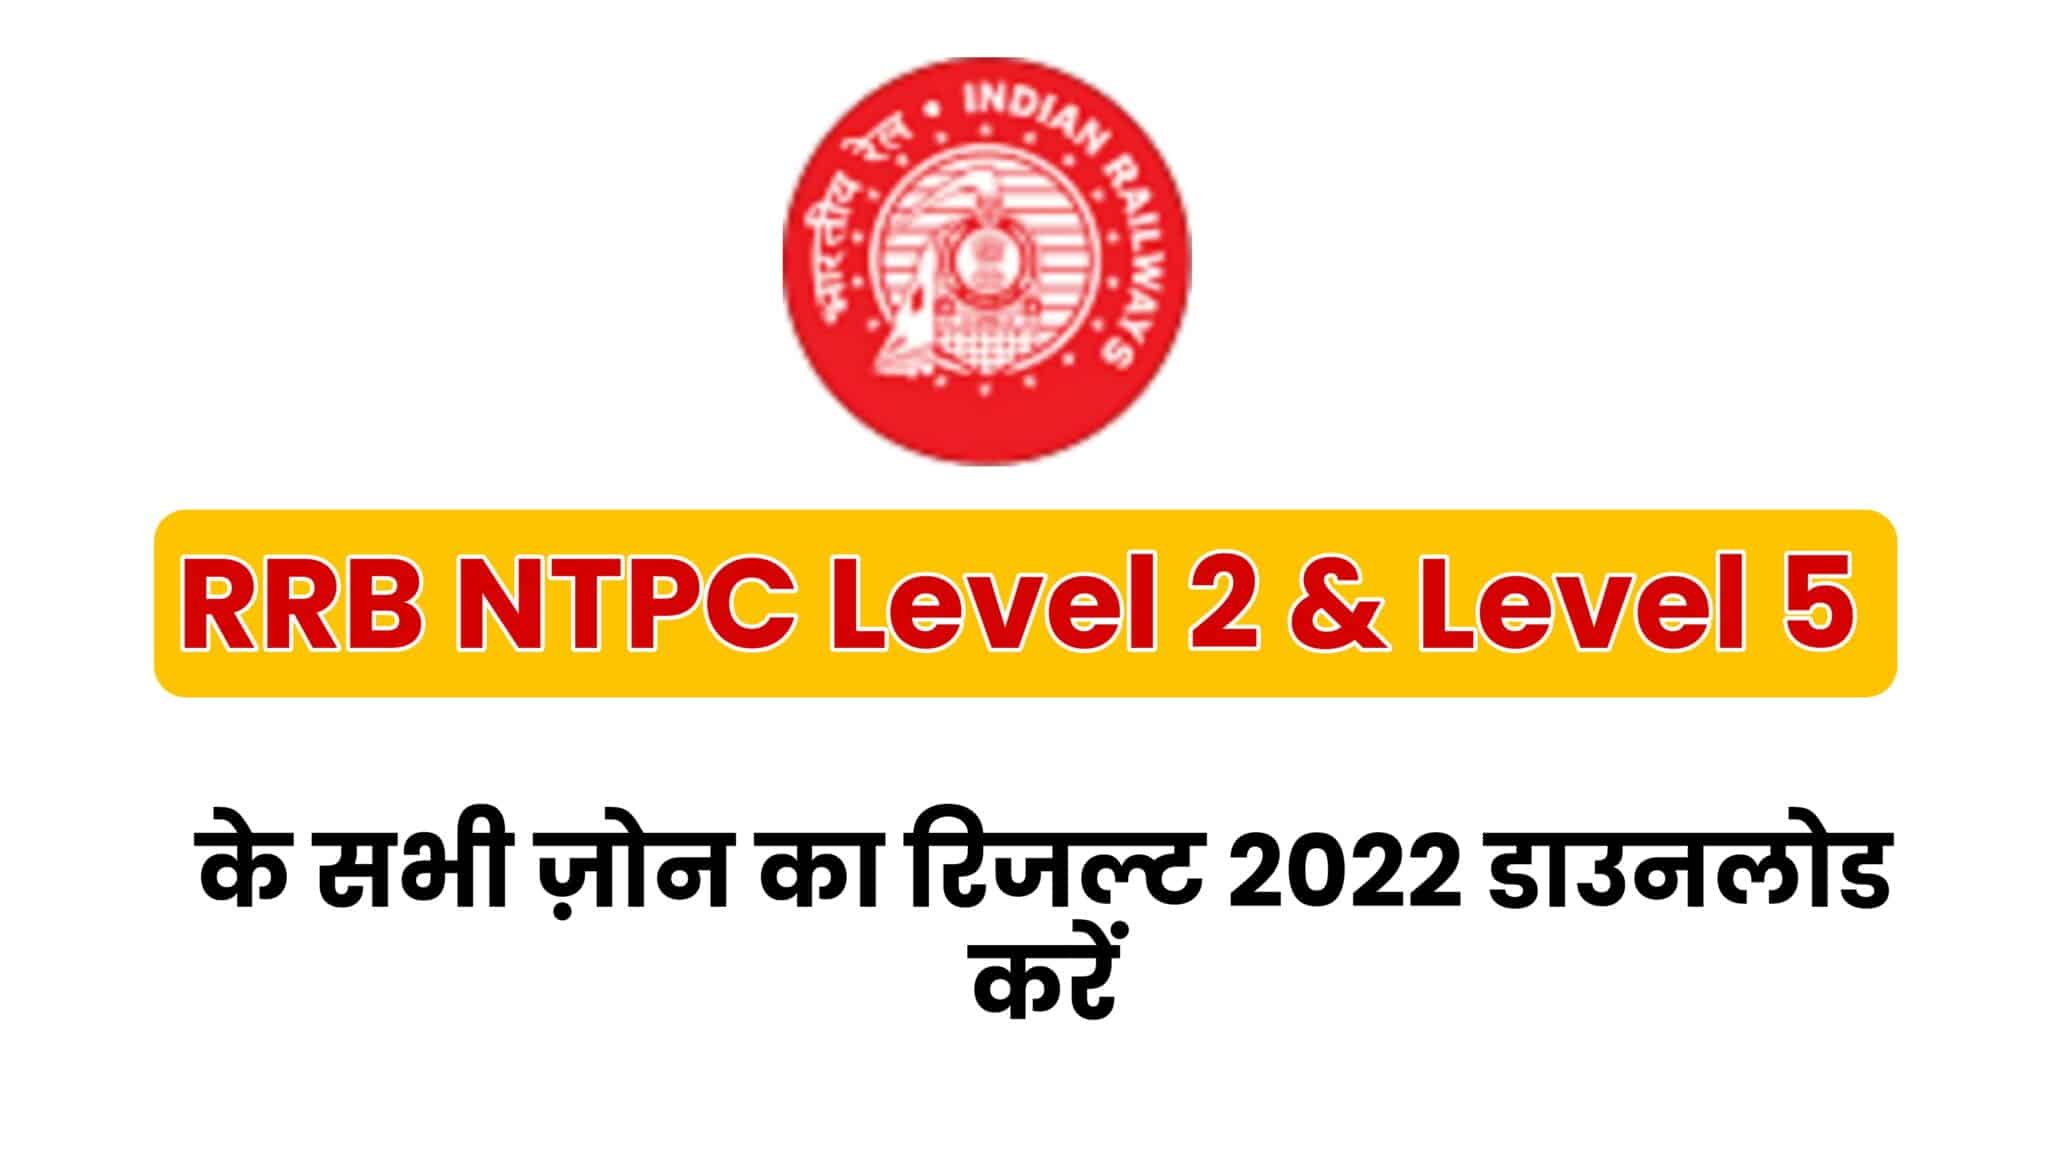 RRB NTPC Level 2 & Level 5 Result 2022 जारी, देखें कौन हुआ उत्तीर्ण